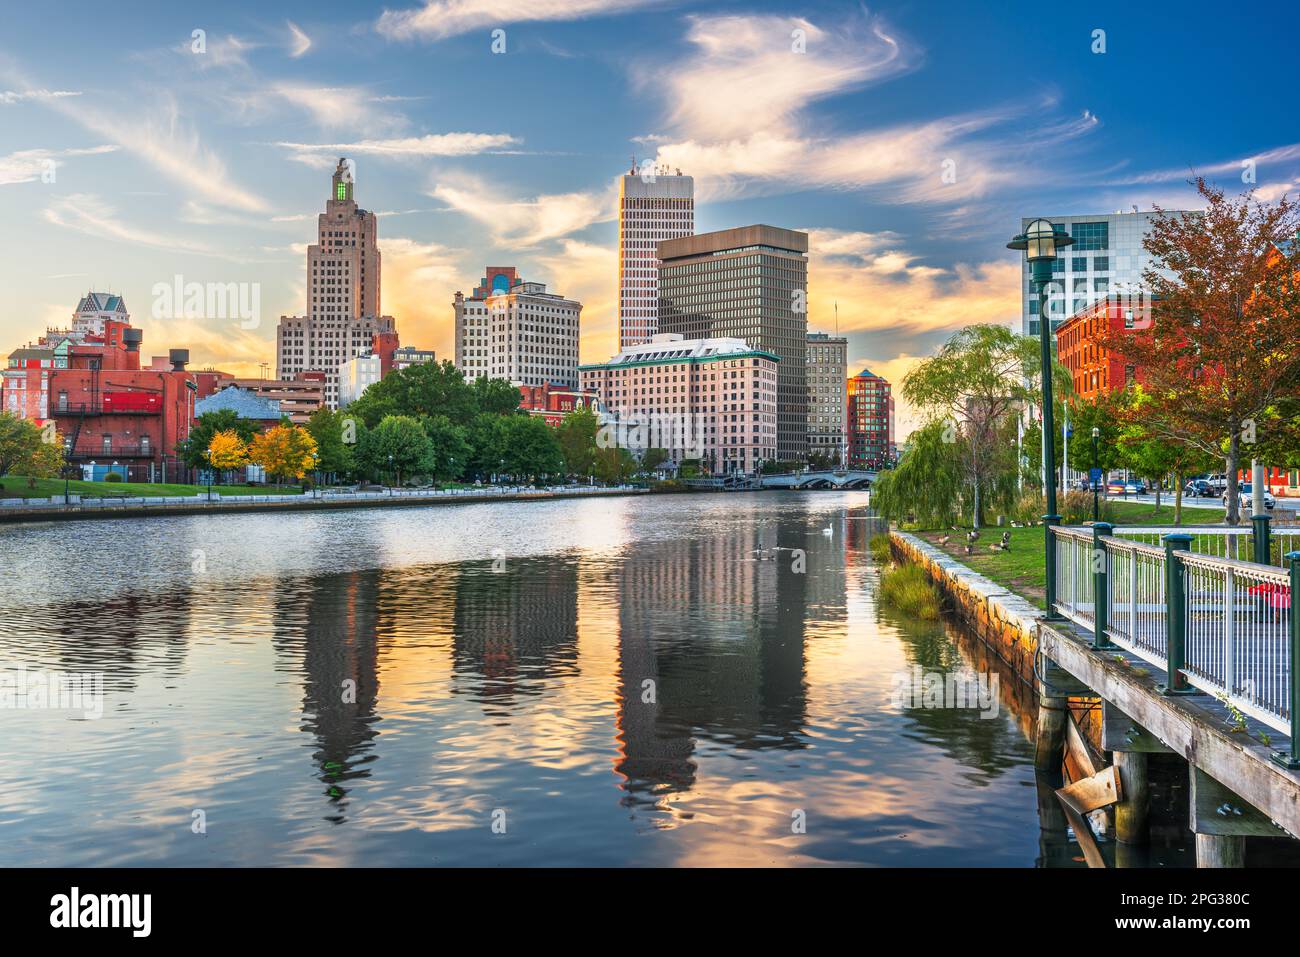 Providence, Rhode Island, USA Centre-ville paysage urbain Vue de dessus la Providence River. Banque D'Images